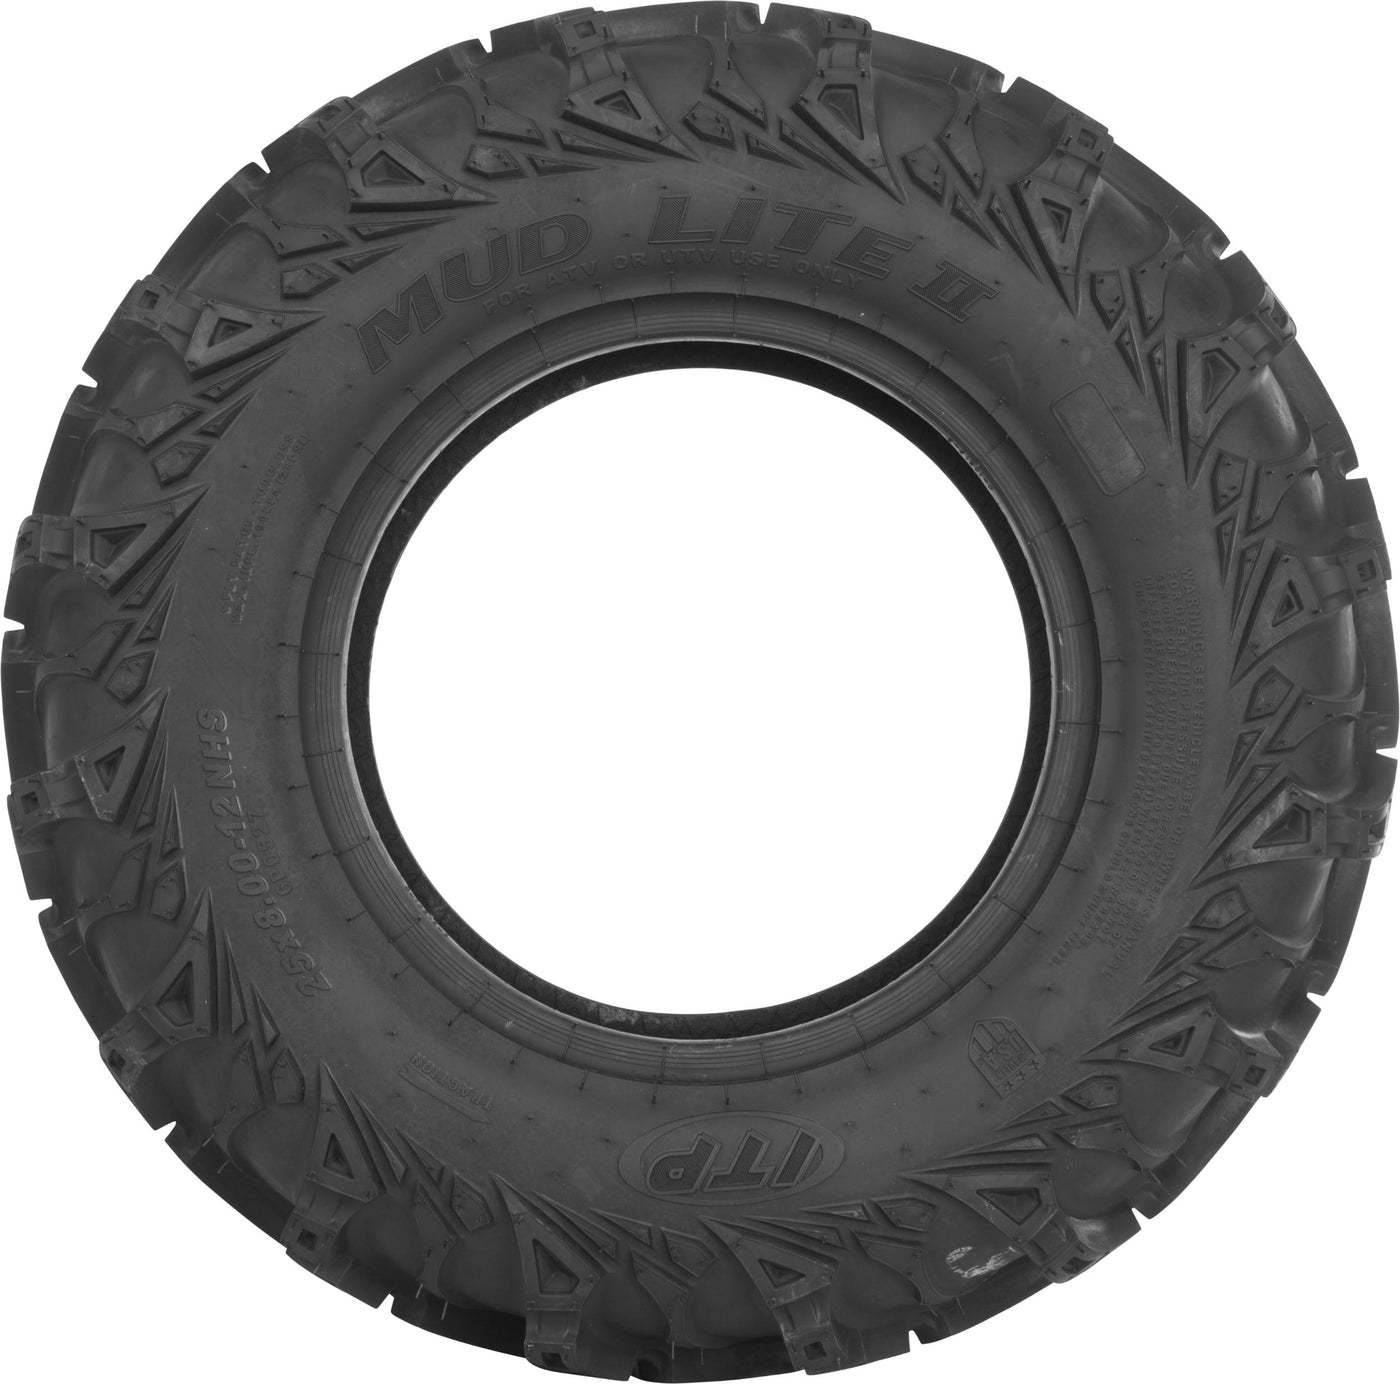 Tire Mud Lite Ii Front 27x9-14 Lr-1100lbs Bias